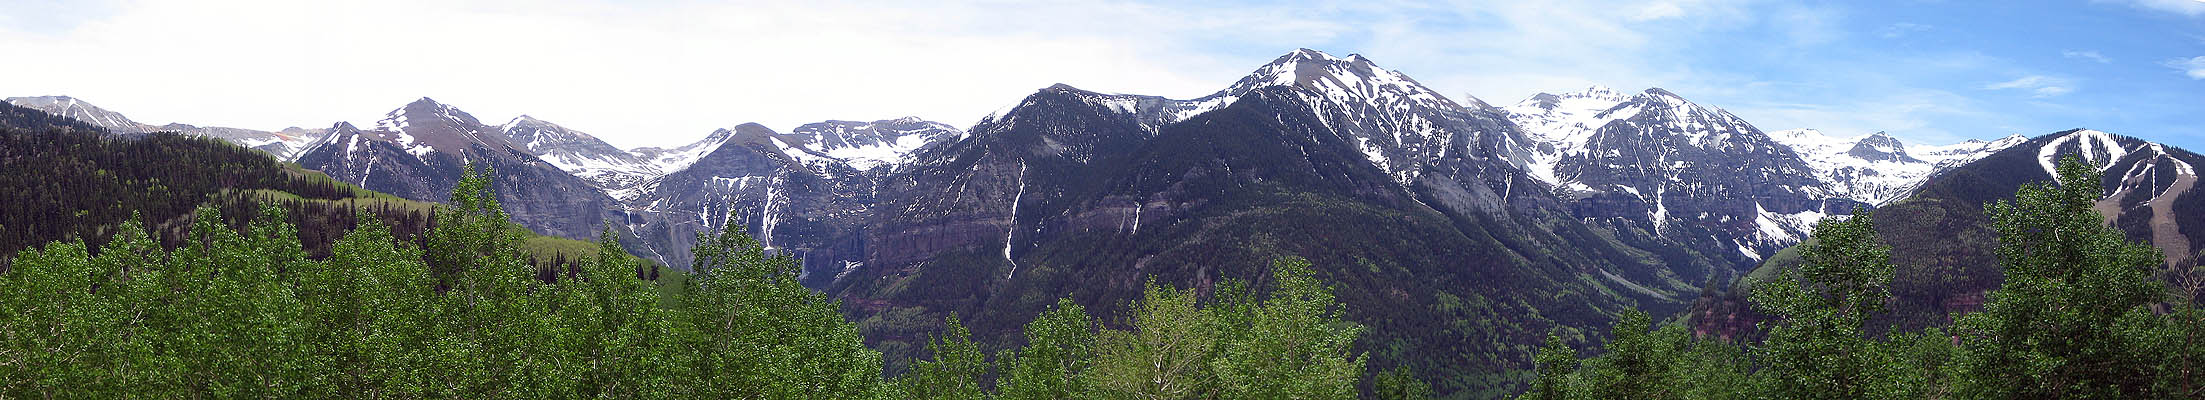 Telluride 2006: Panoramic View 1